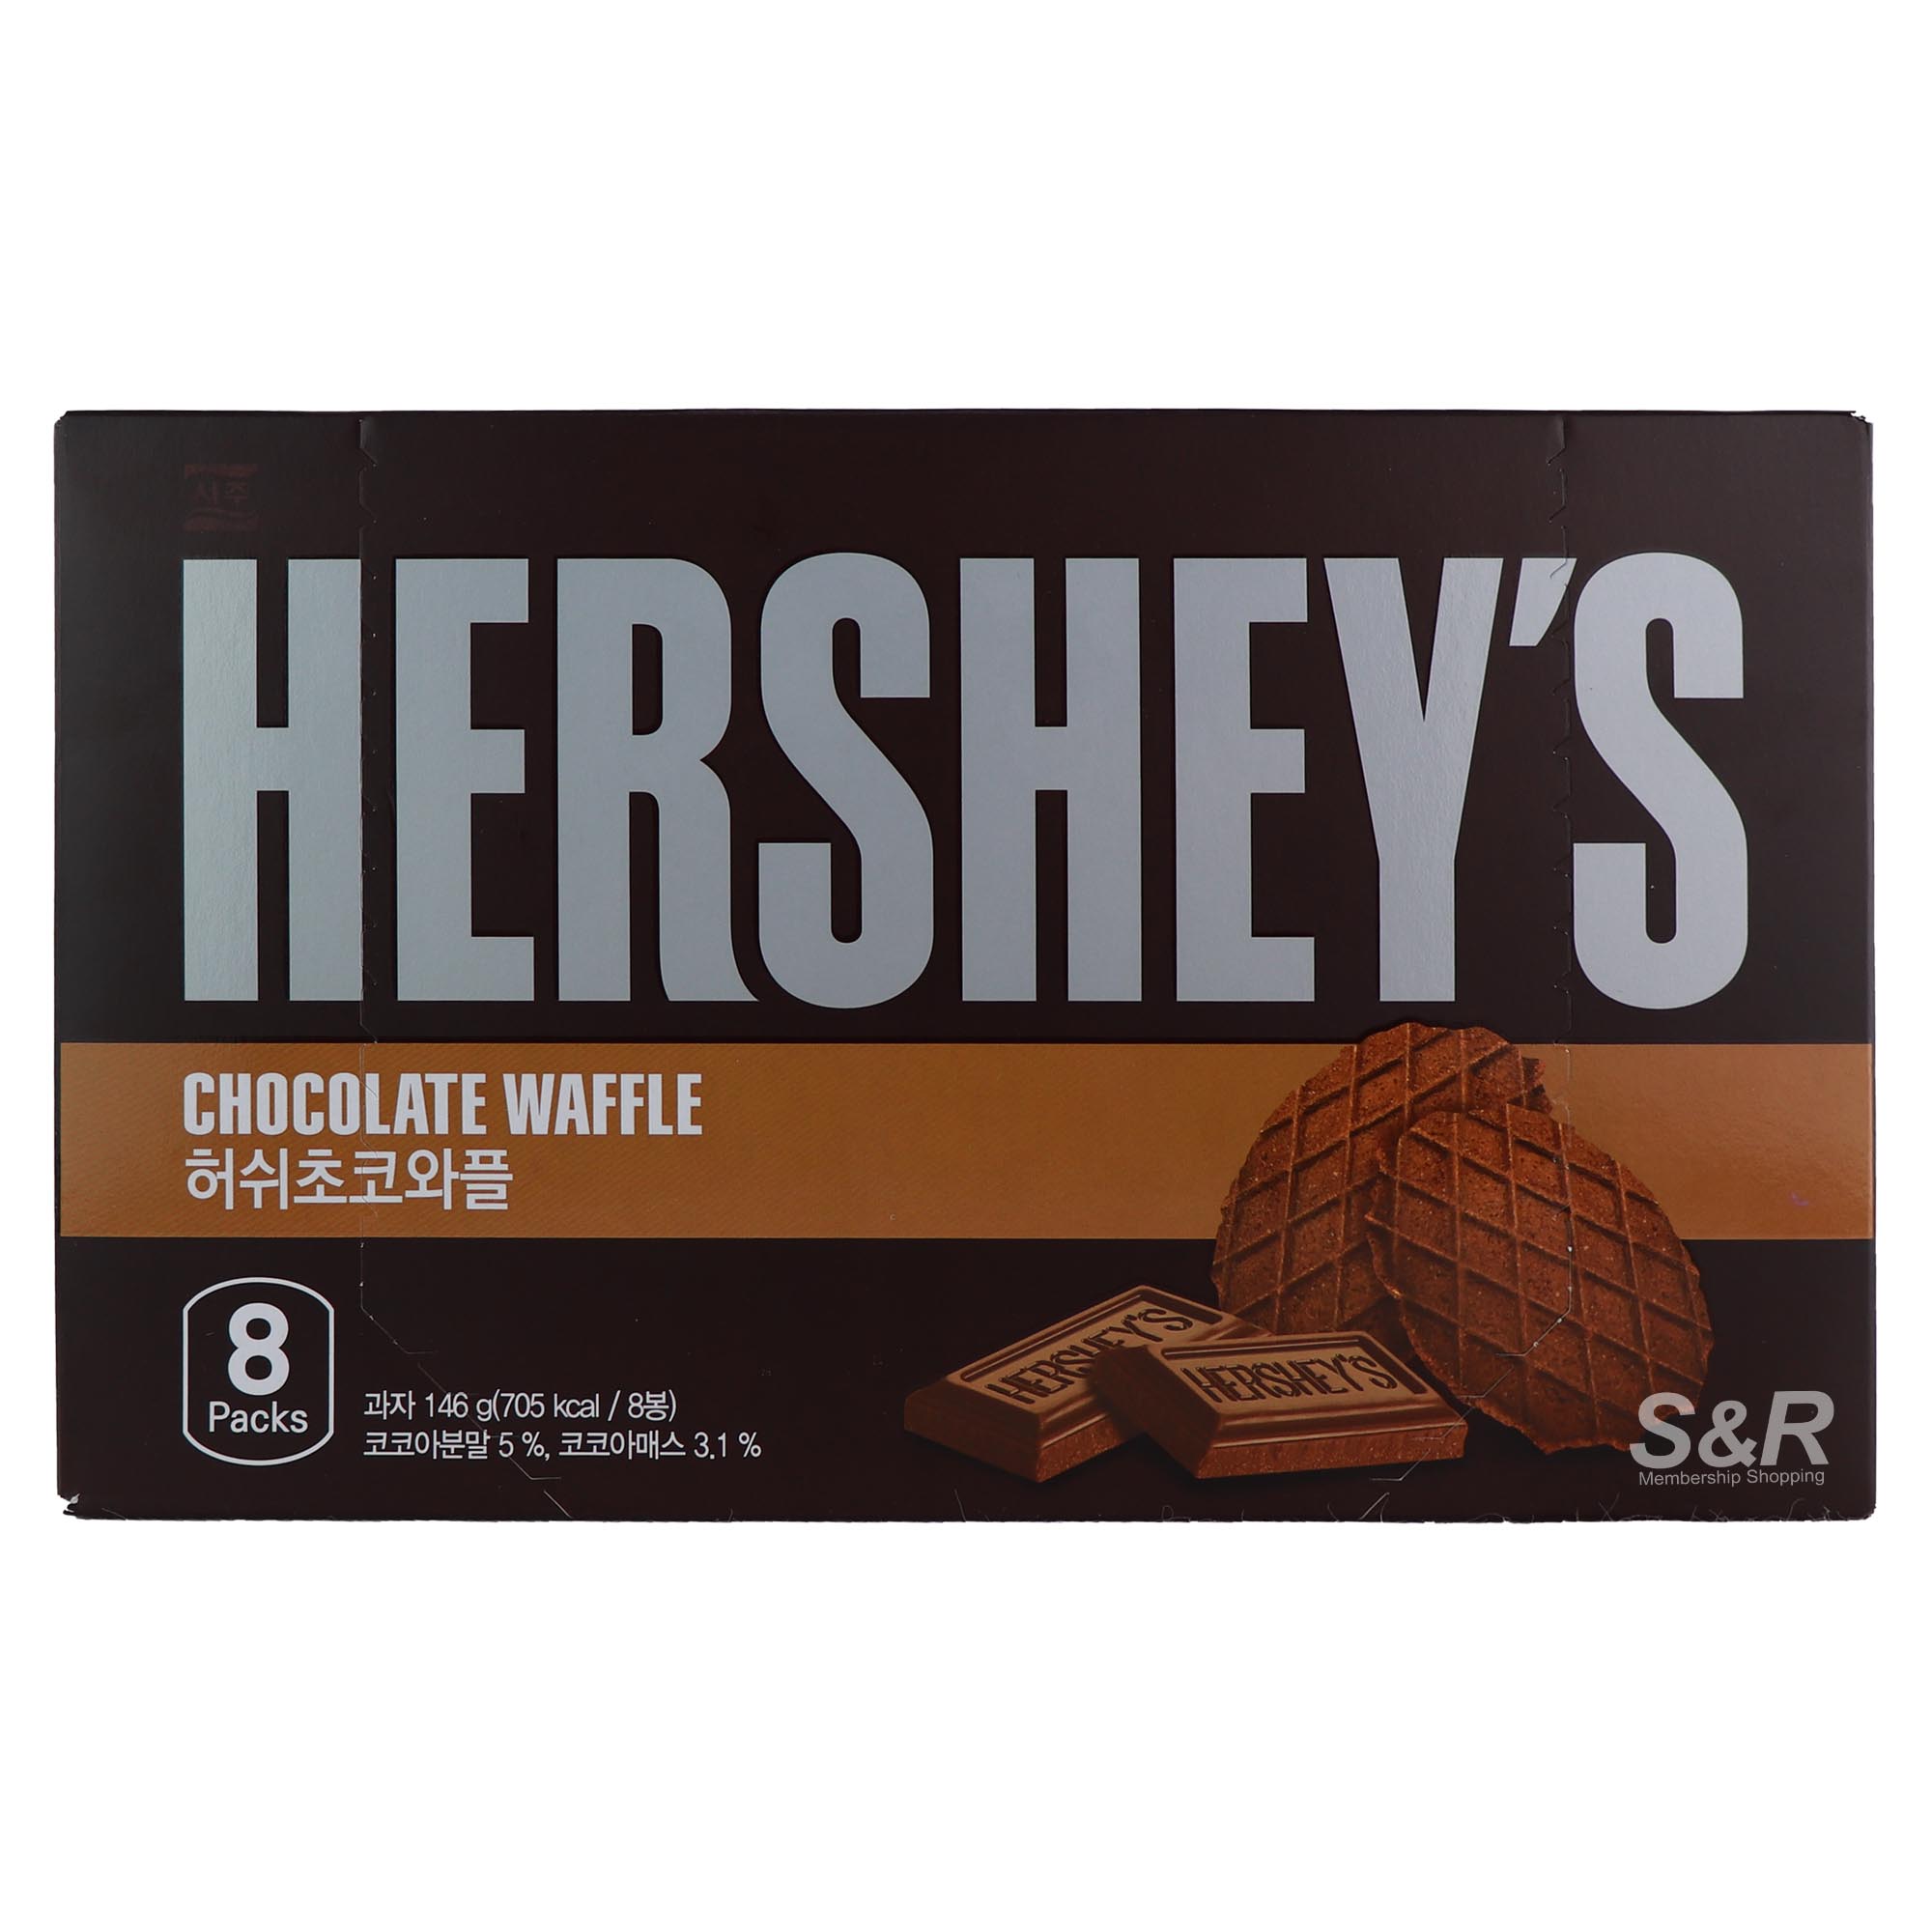 Hershey's Chocolate Waffle 8 packs